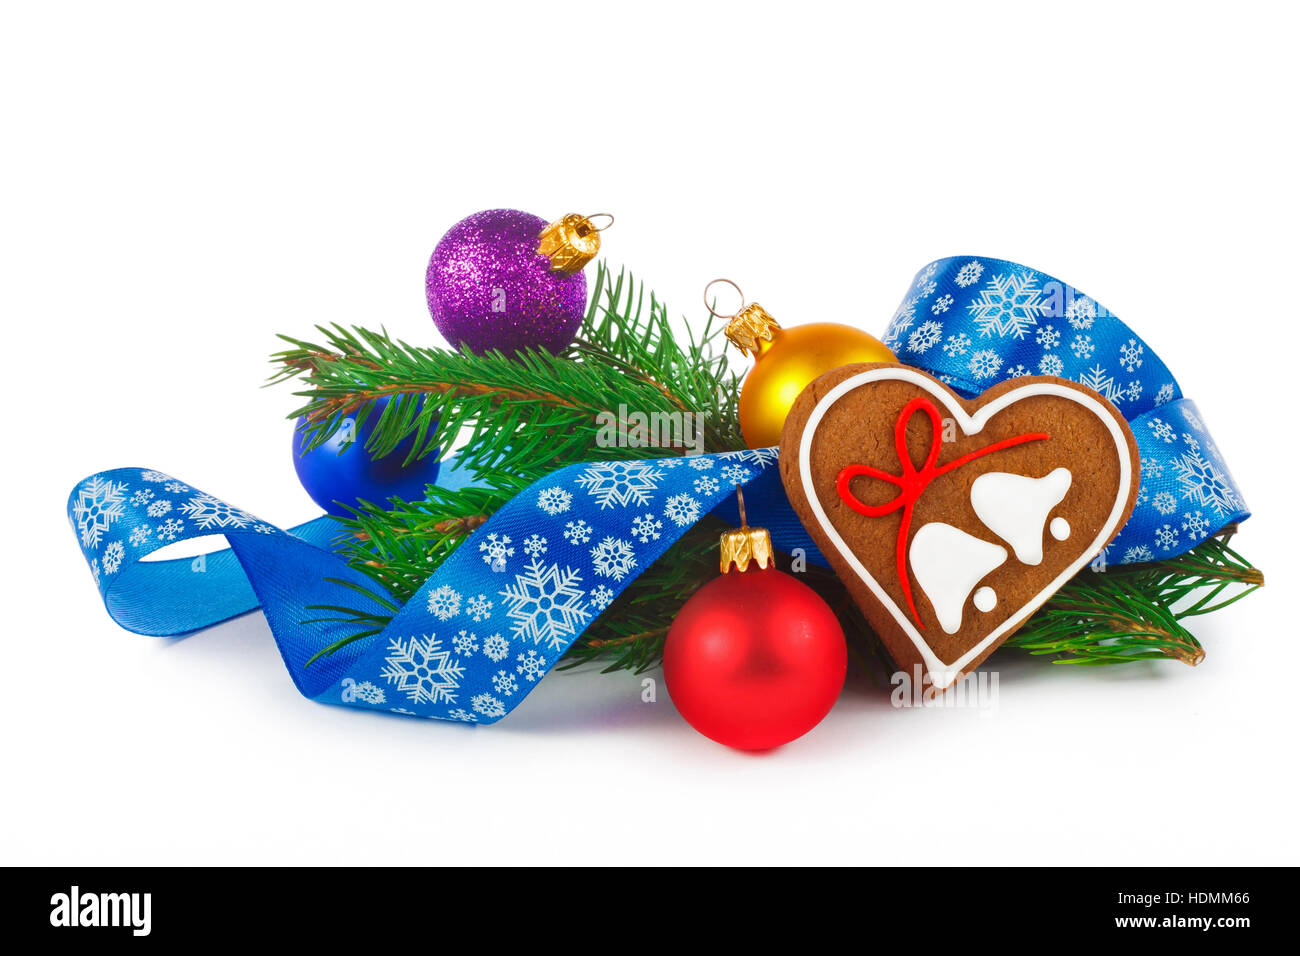 Weihnachten-Zusammensetzung - Lebkuchen und Dekorationen auf weißem Hintergrund Stockfoto